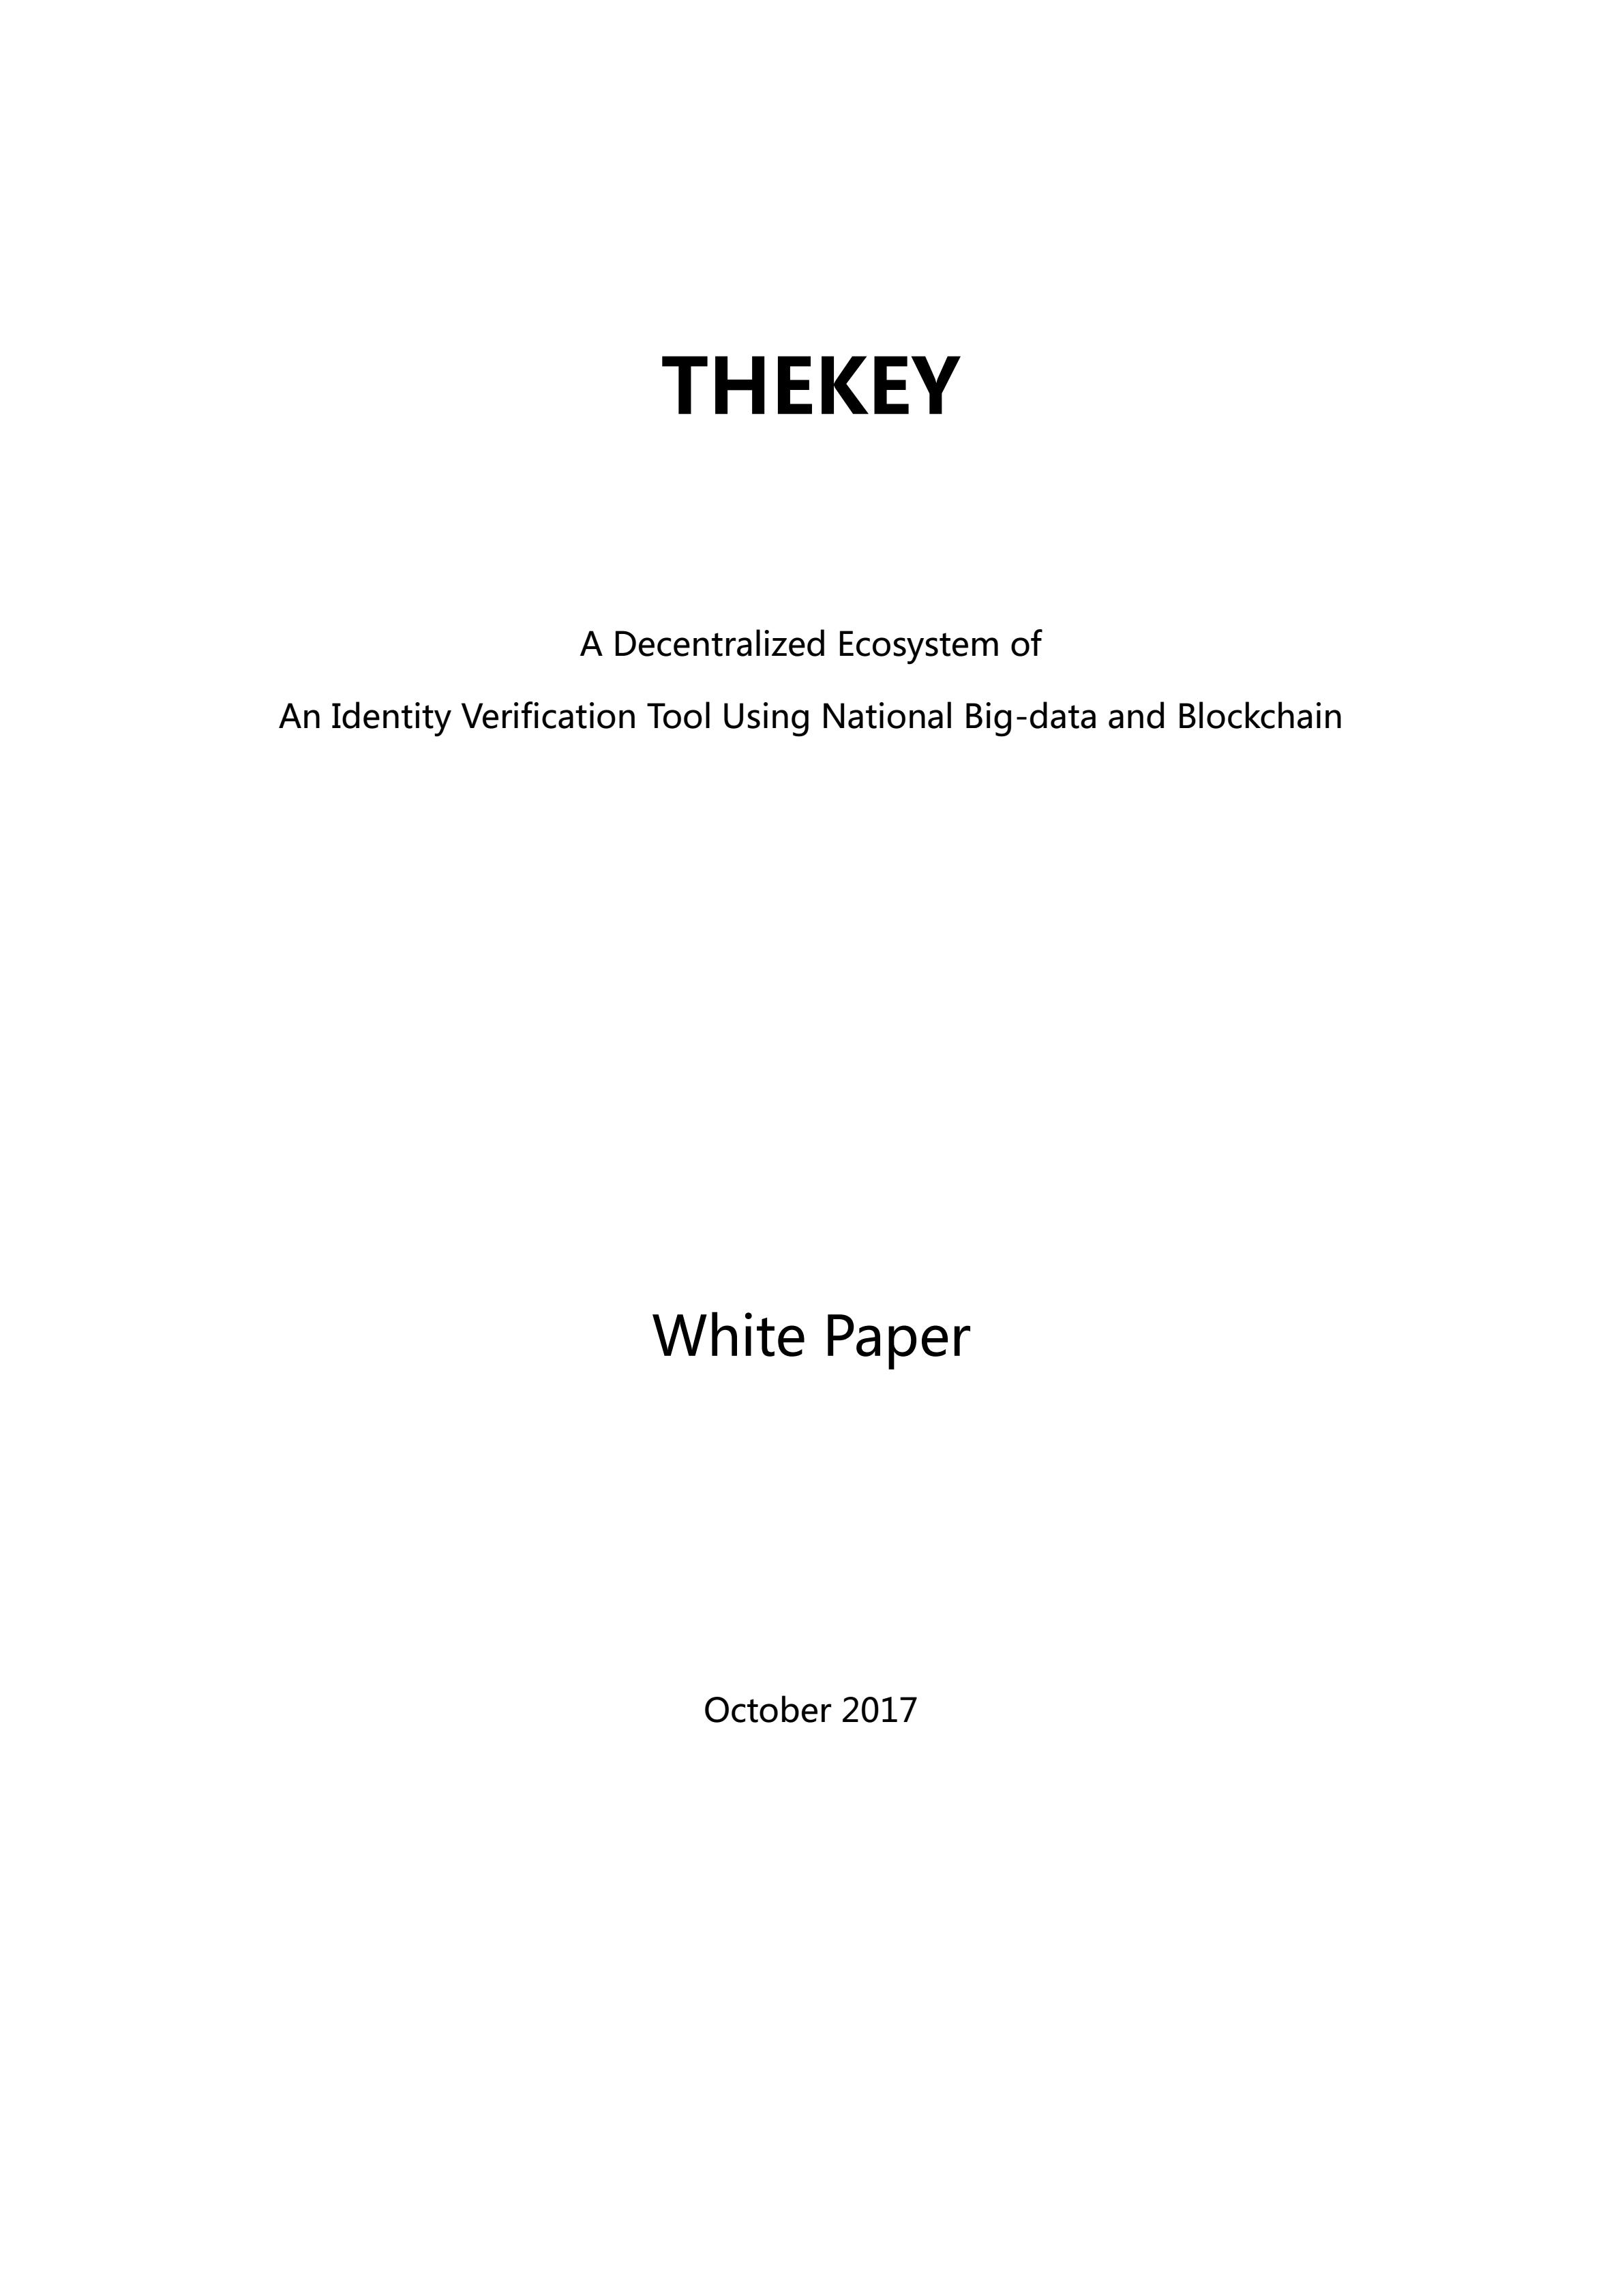 TKY_THEKEY_WHITE_PAPER_ENGLISH_00.jpg